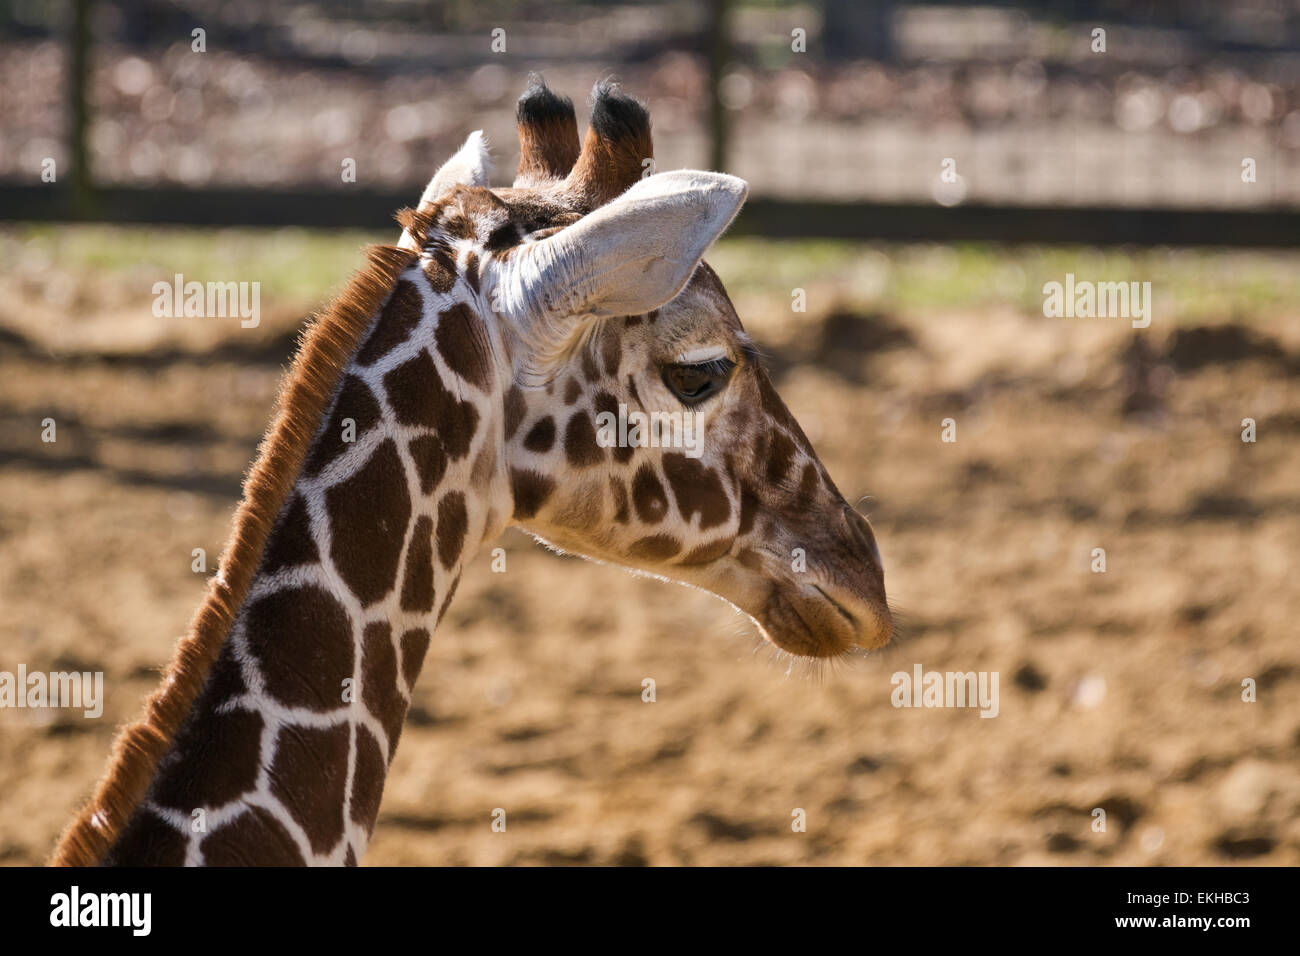 A Giraffe at ZSL Whipsnade zoo Giraffa camelopardalis Stock Photo